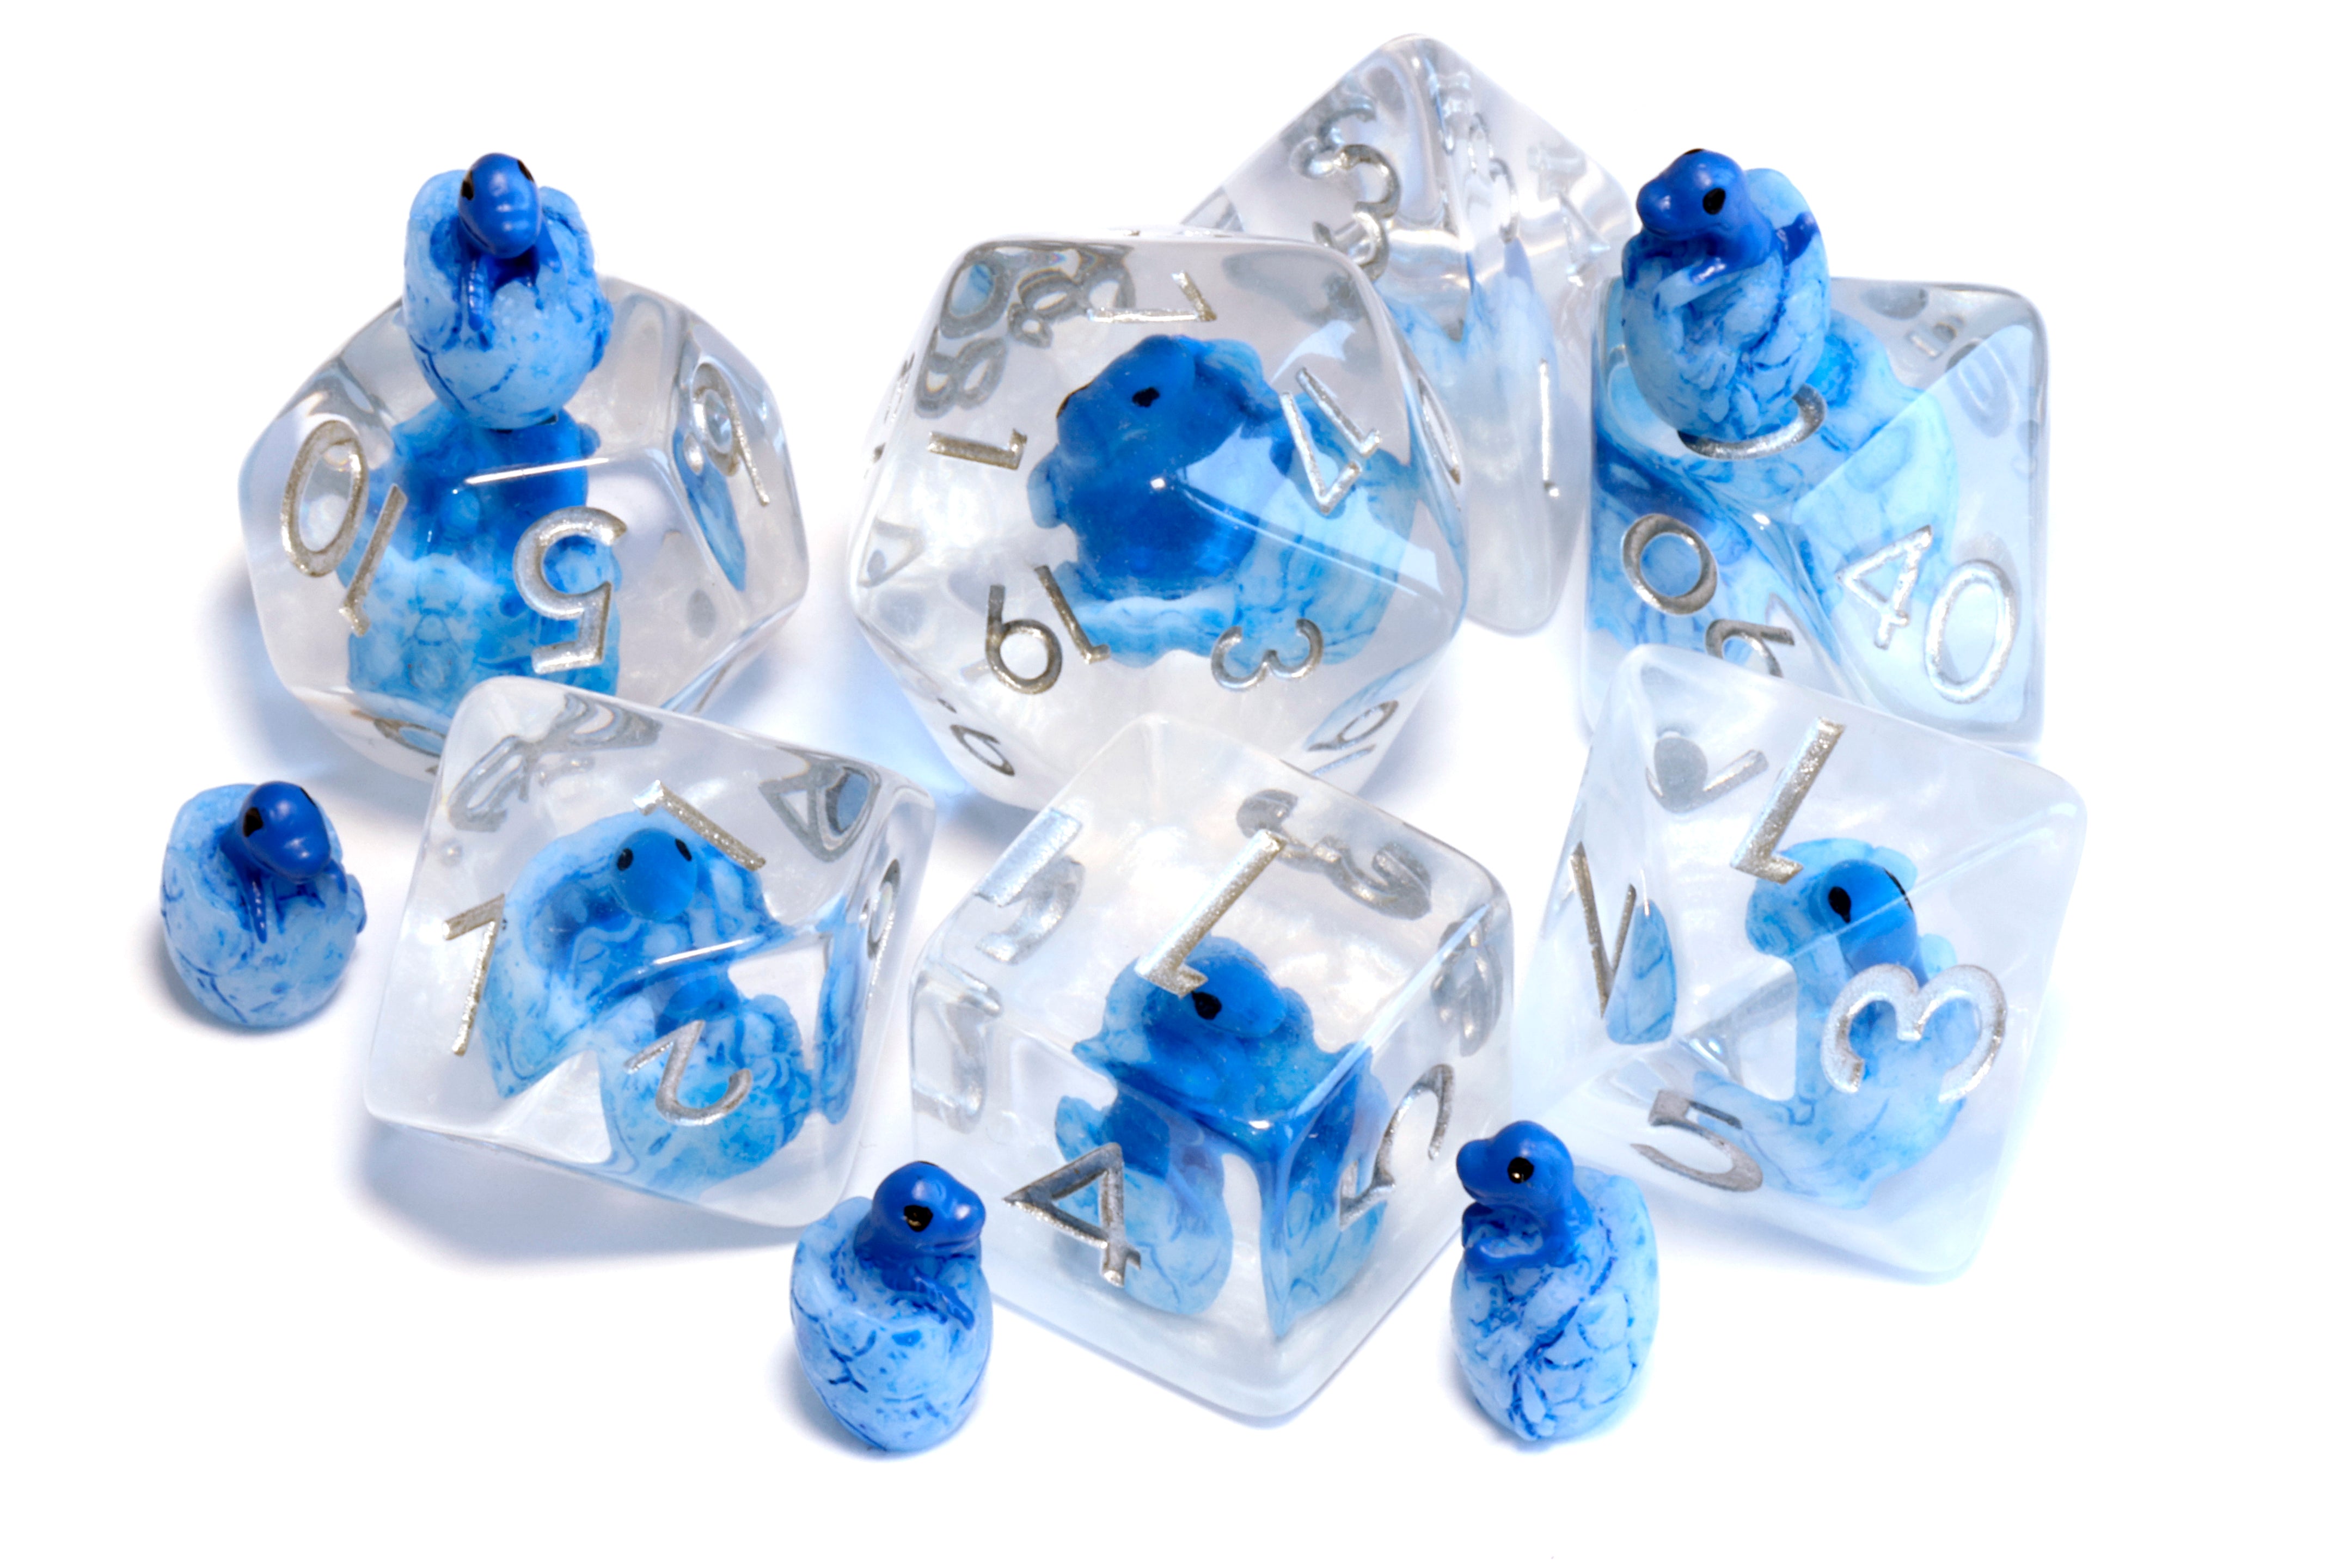 Frost Dragon Hatchling dice set